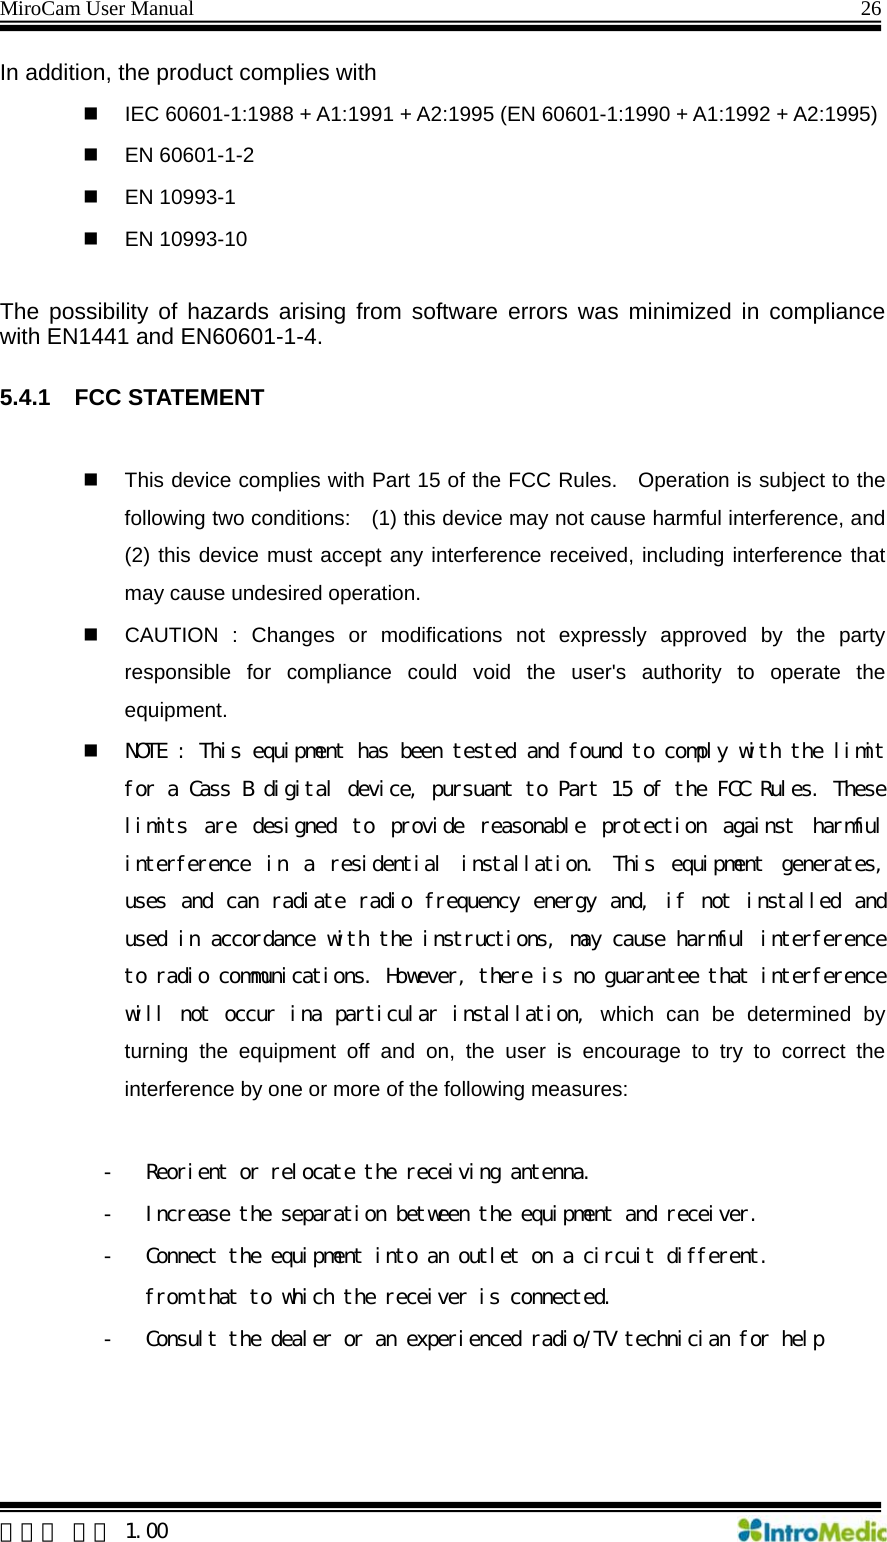 MiroCam User Manual                                                                26  한글판 버전 1.00 In addition, the product complies with   IEC 60601-1:1988 + A1:1991 + A2:1995 (EN 60601-1:1990 + A1:1992 + A2:1995)  EN 60601-1-2  EN 10993-1  EN 10993-10  The possibility of hazards arising from software errors was minimized in compliance with EN1441 and EN60601-1-4.  5.4.1 FCC STATEMENT    This device complies with Part 15 of the FCC Rules.   Operation is subject to the following two conditions:    (1) this device may not cause harmful interference, and (2) this device must accept any interference received, including interference that may cause undesired operation.   CAUTION : Changes or modifications not expressly approved by the party responsible for compliance could void the user&apos;s authority to operate the equipment.  NOTE : This equipment has been tested and found to comply with the limit for a Cass B digital device, pursuant to Part 15 of the FCC Rules. These limits  are  designed  to  provide  reasonable  protection  against  harmful interference  in  a  residential  installation.  This  equipment  generates, uses and can radiate  radio frequency energy and, if not installed and used in accordance with the instructions, may cause harmful interference to radio communications. However, there is no guarantee that interference will not occur ina particular installation, which can be determined by turning the equipment off and on, the user is encourage to try to correct the interference by one or more of the following measures:  - Reorient or relocate the receiving antenna. - Increase the separation between the equipment and receiver. - Connect the equipment into an outlet on a circuit different. from that to which the receiver is connected. - Consult the dealer or an experienced radio/TV technician for help    